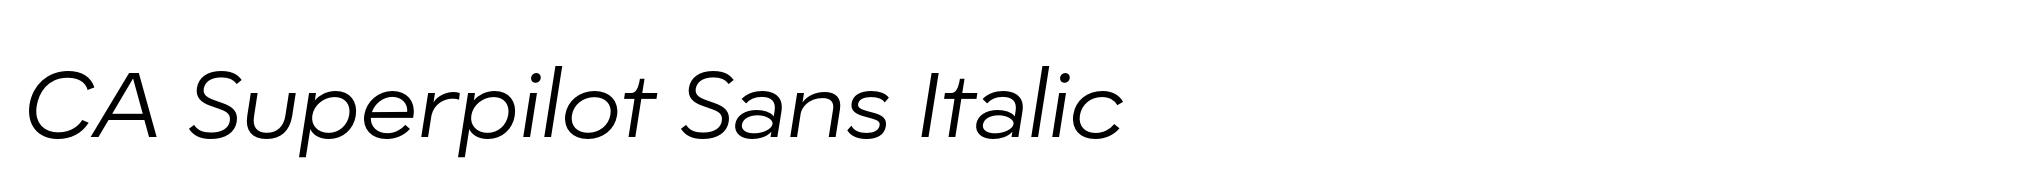 CA Superpilot Sans Italic image